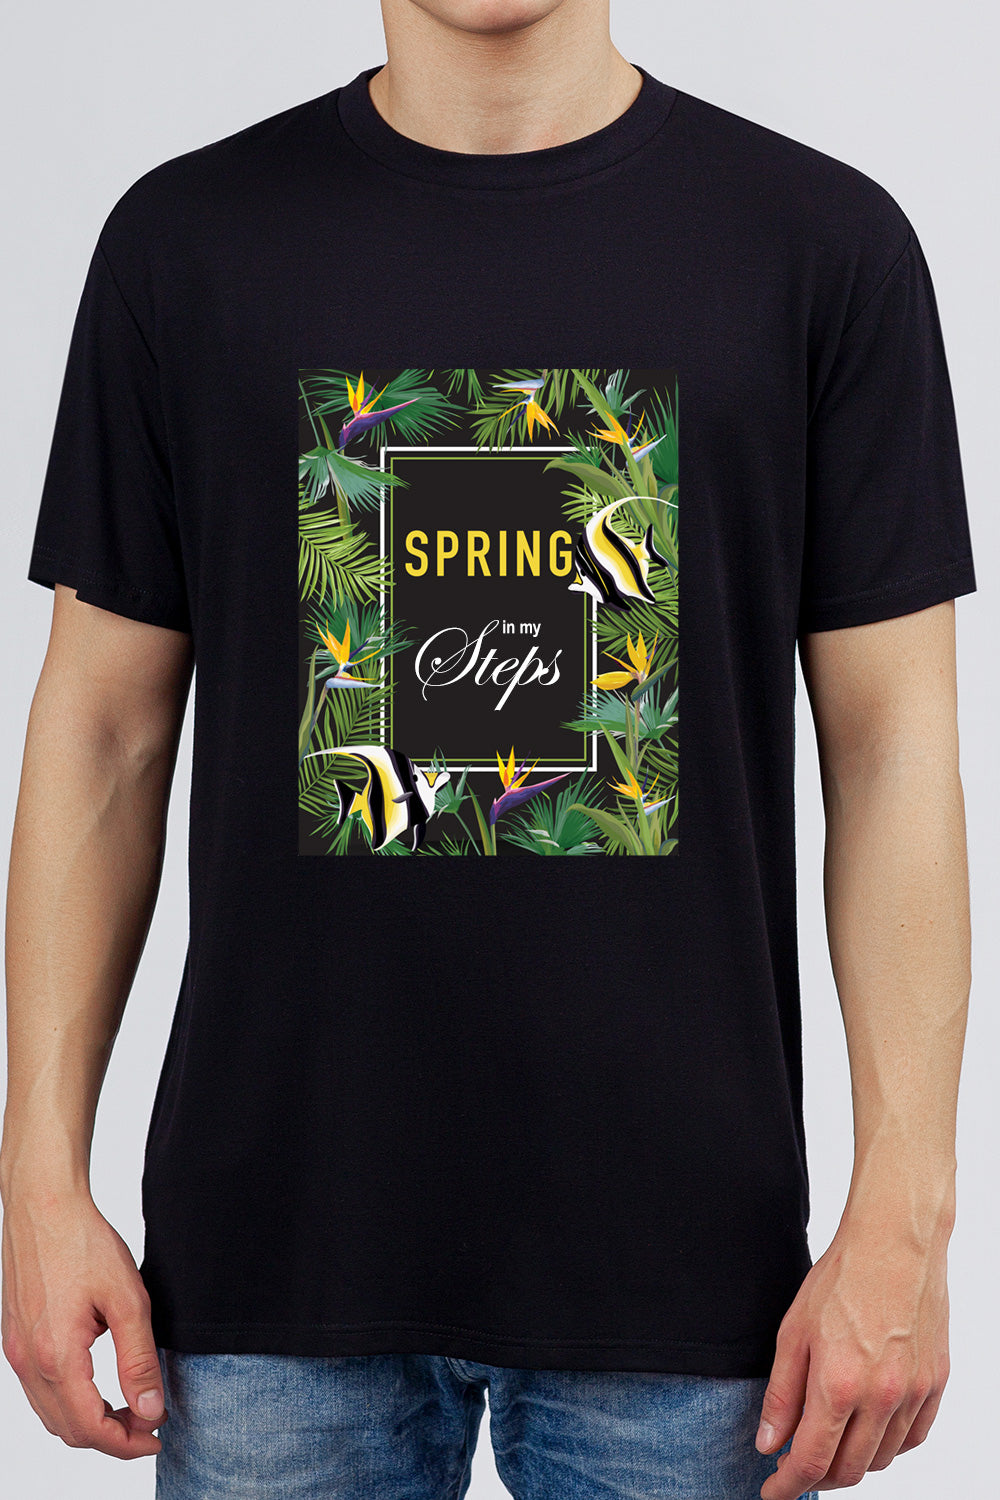 Spring in my Steps - Grunge Tropical Printed Black Tee